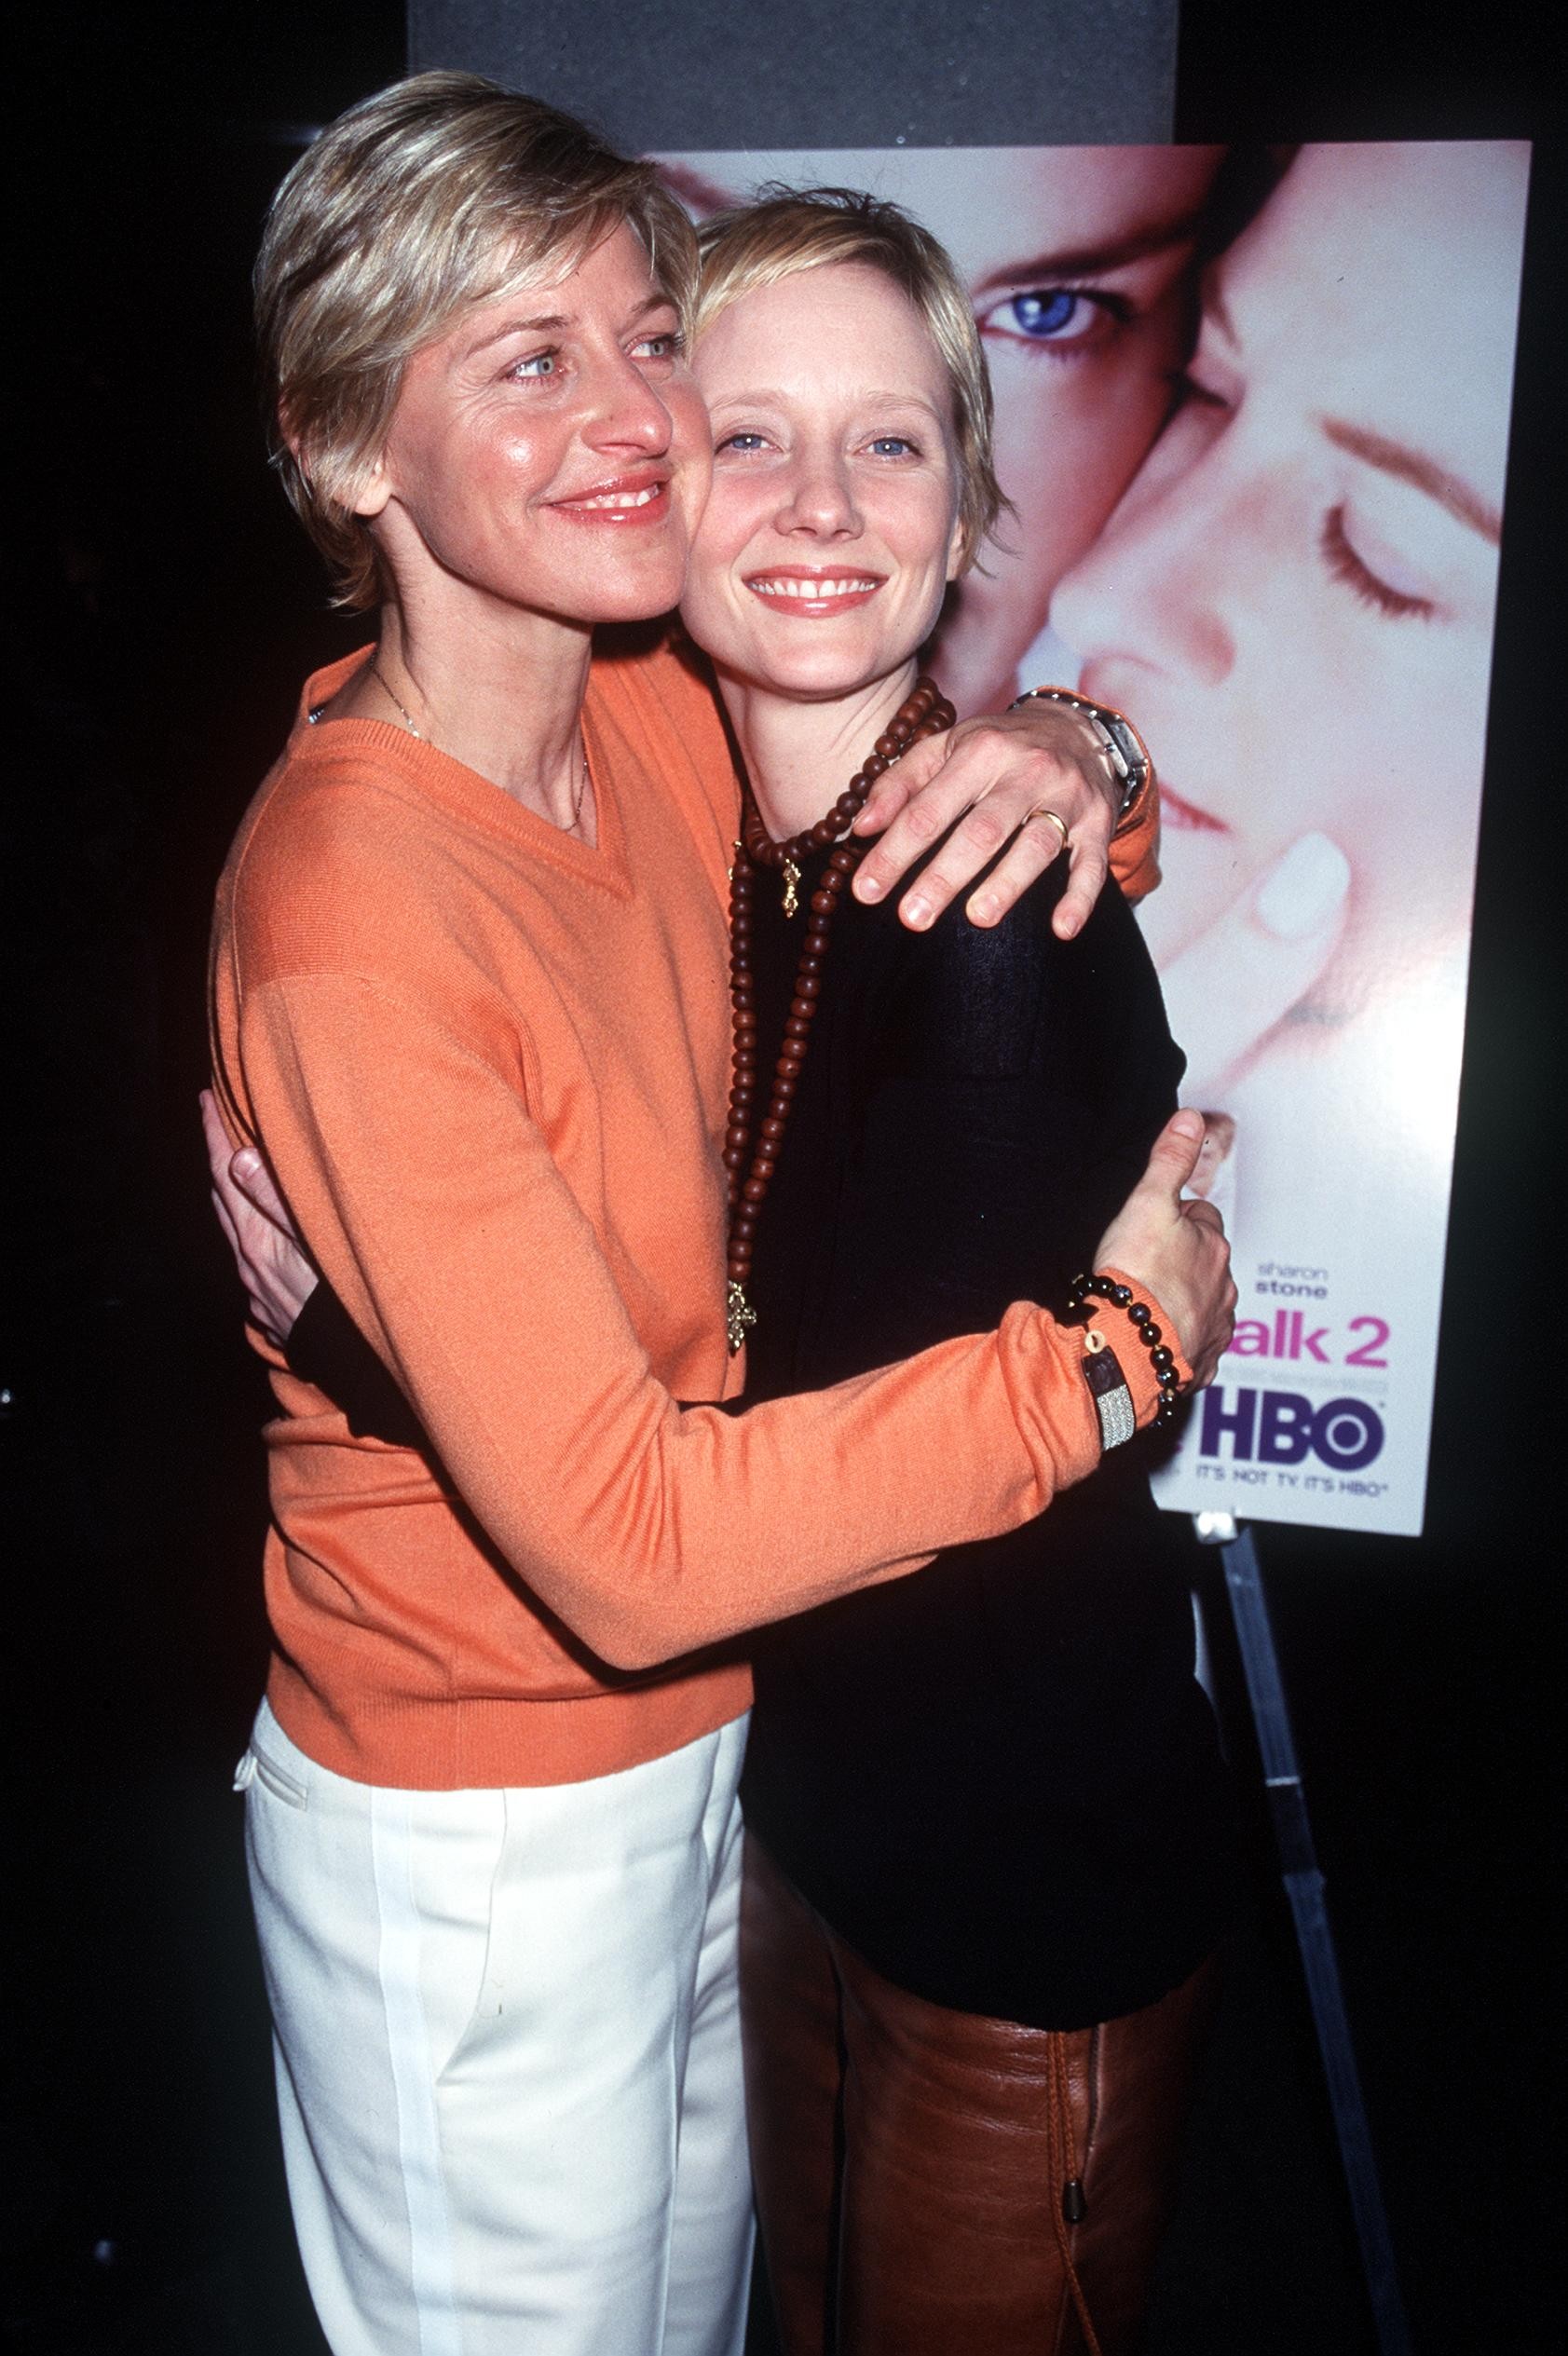 A atriz e apresentadora Ellen DeGeneres e a atriz Anne Heche em uma foto datada de agosto do ano 2000 (Foto: Getty Images)